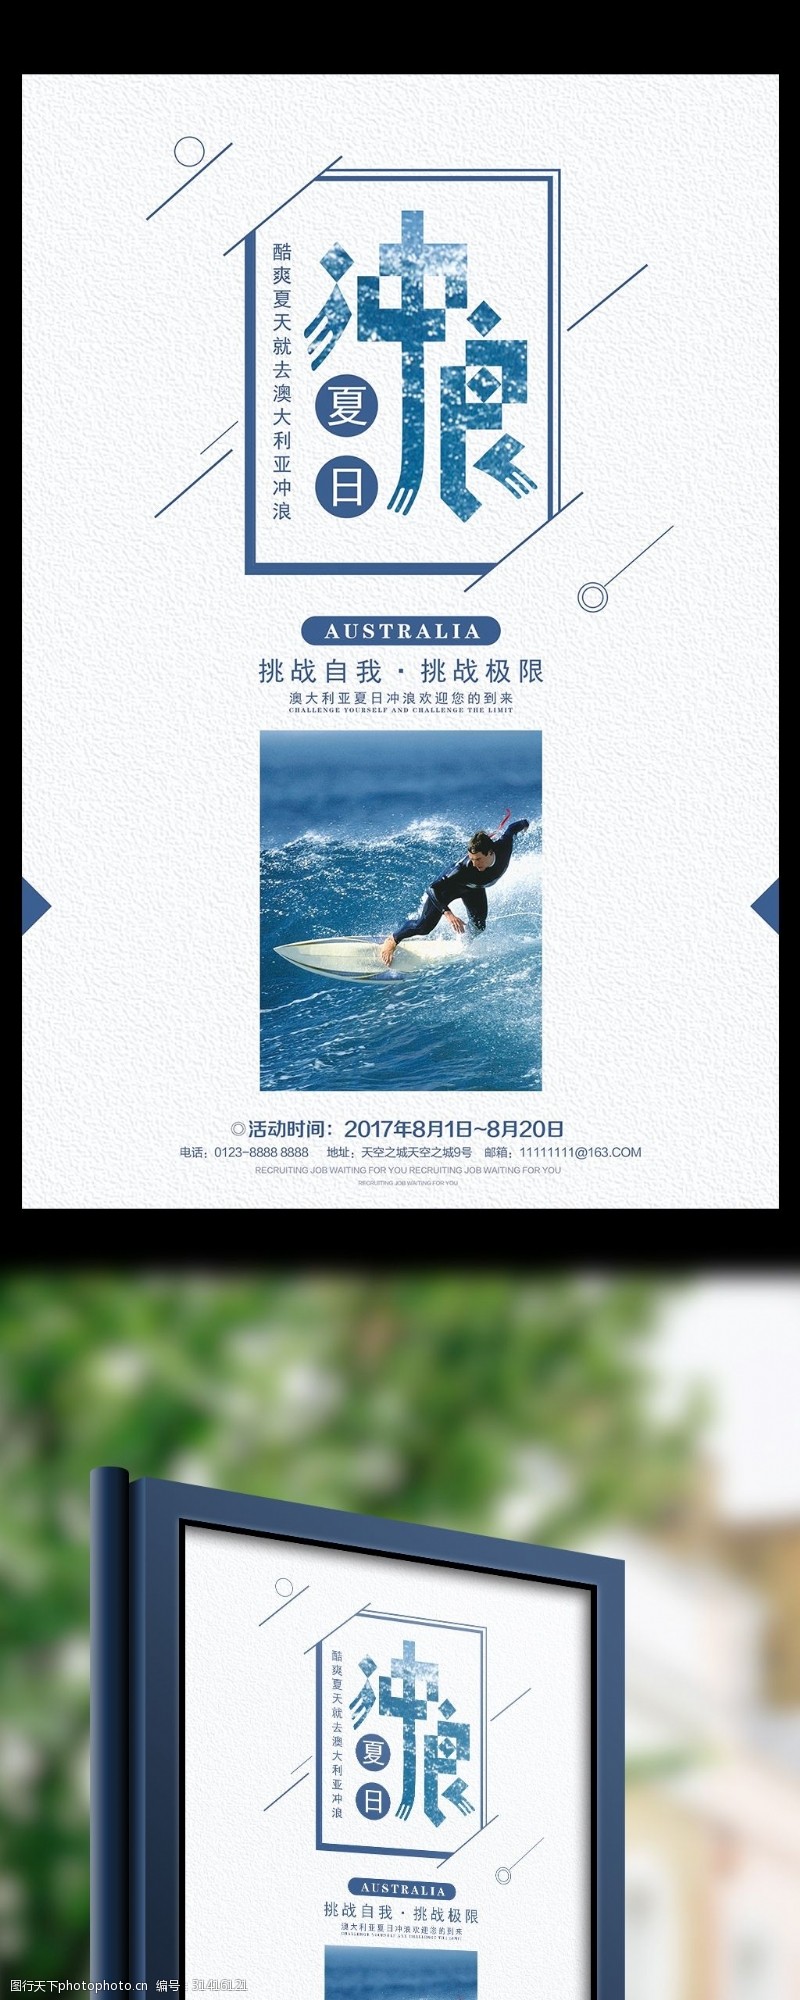 休闲娱乐体育夏日冲浪宣传海报